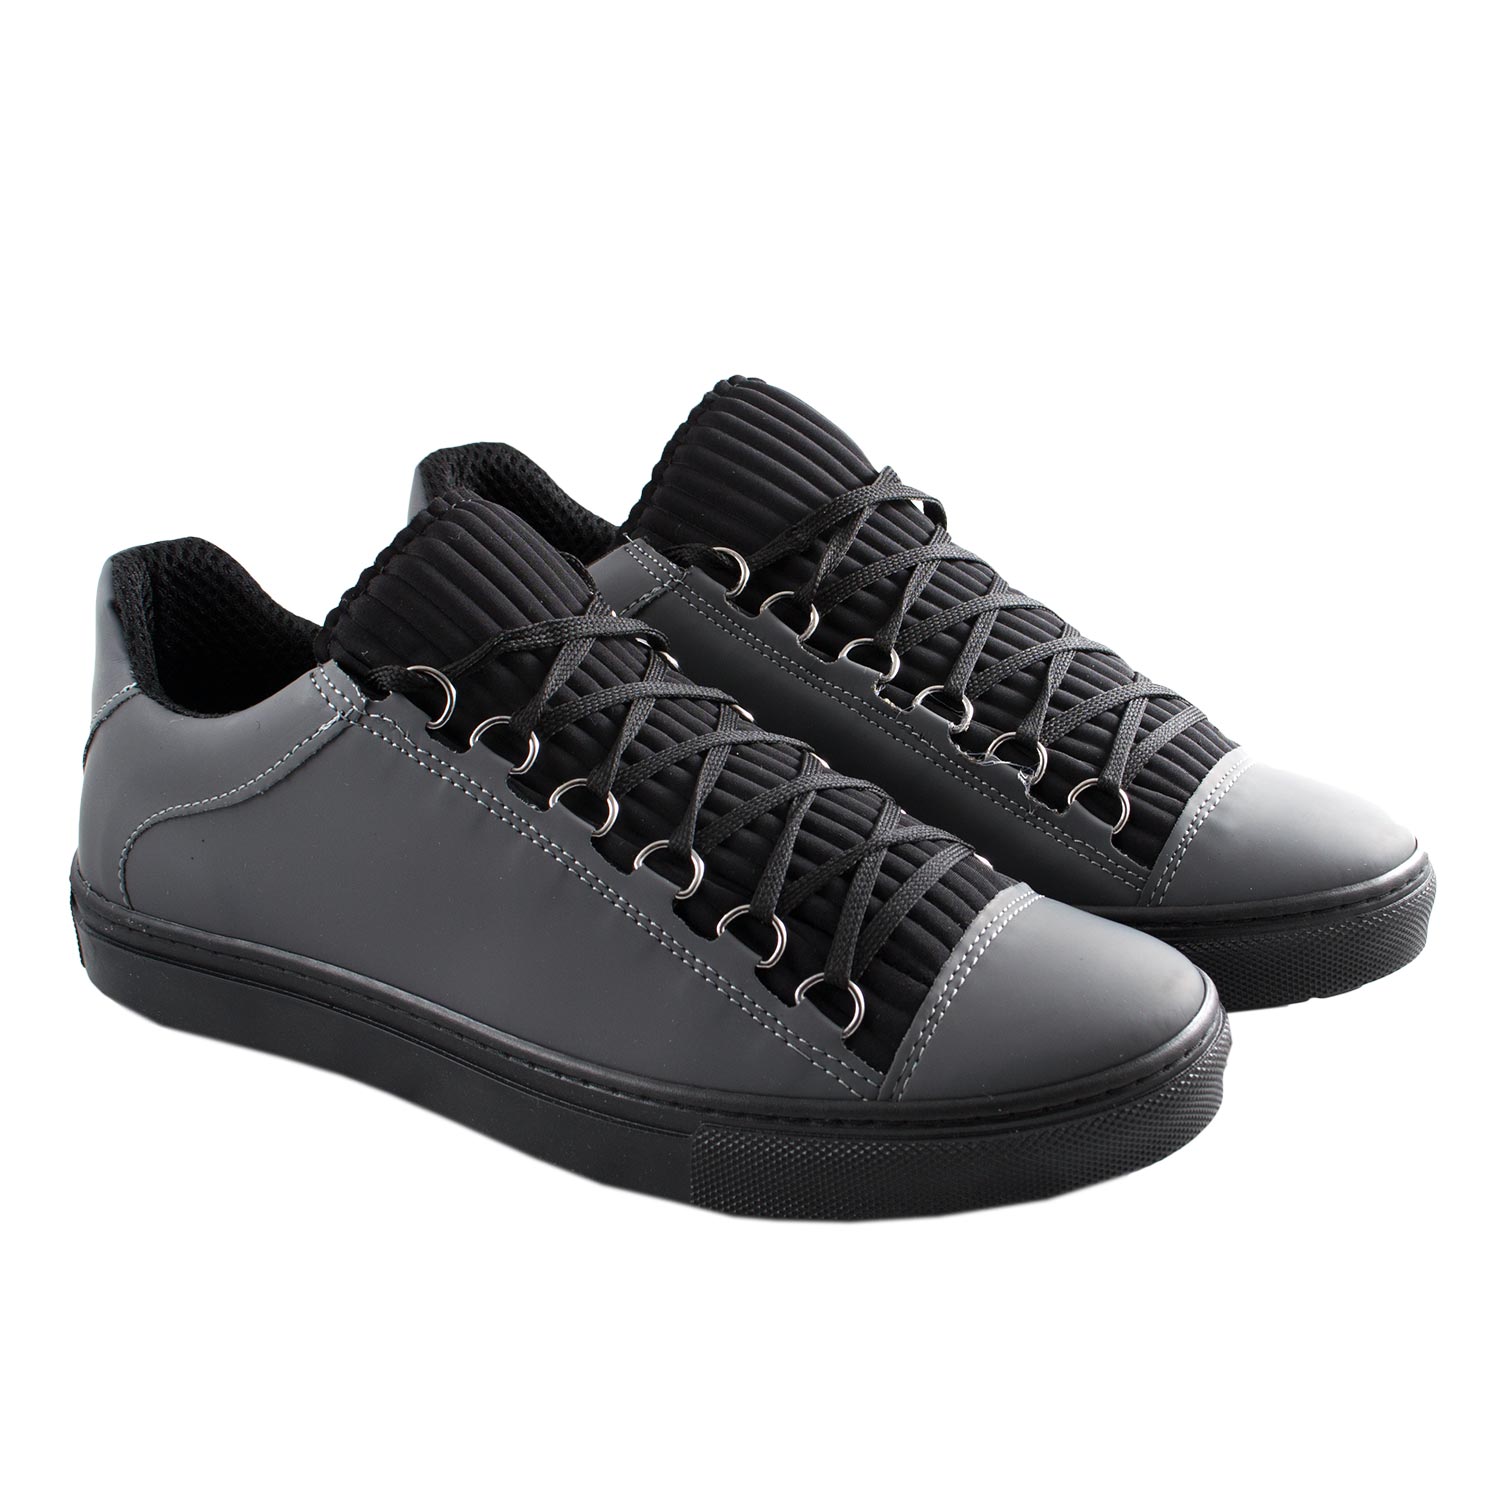 Sneakers scarpa uomo calzature man alta modello in vera pelle grigio impermeabile e tessuto